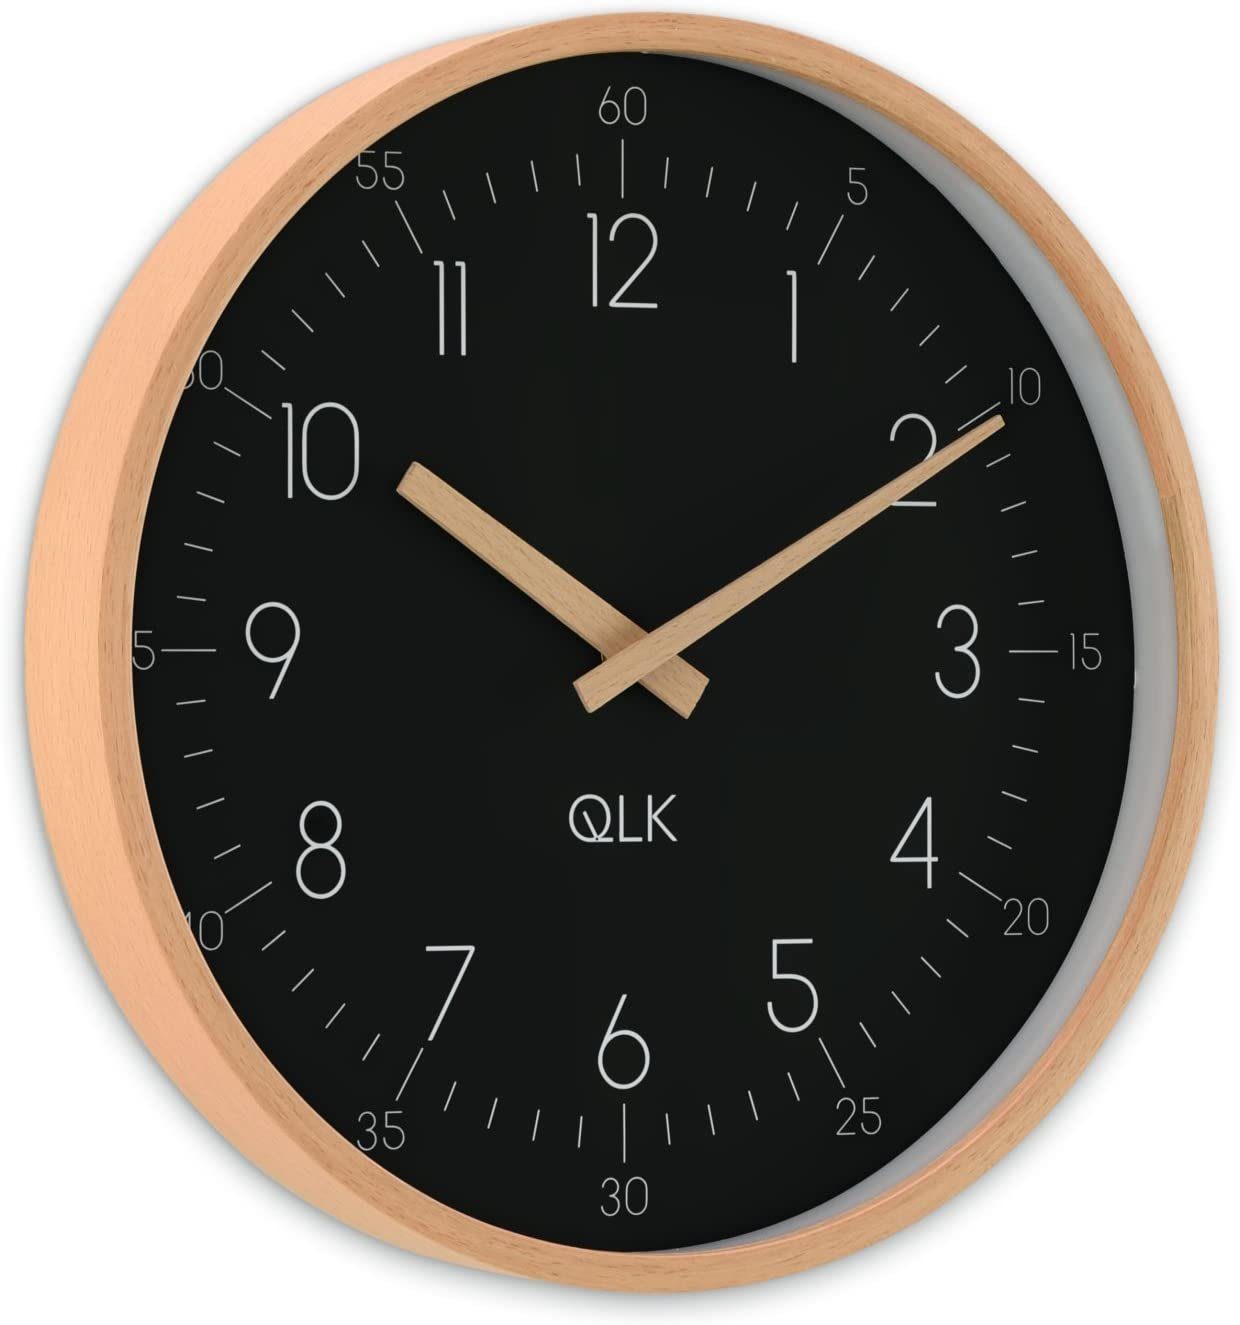 Holzrahmen Uhr Design Zeigern, Wanduhr Ø31cm schwarz Slight mit Moderne QLK und